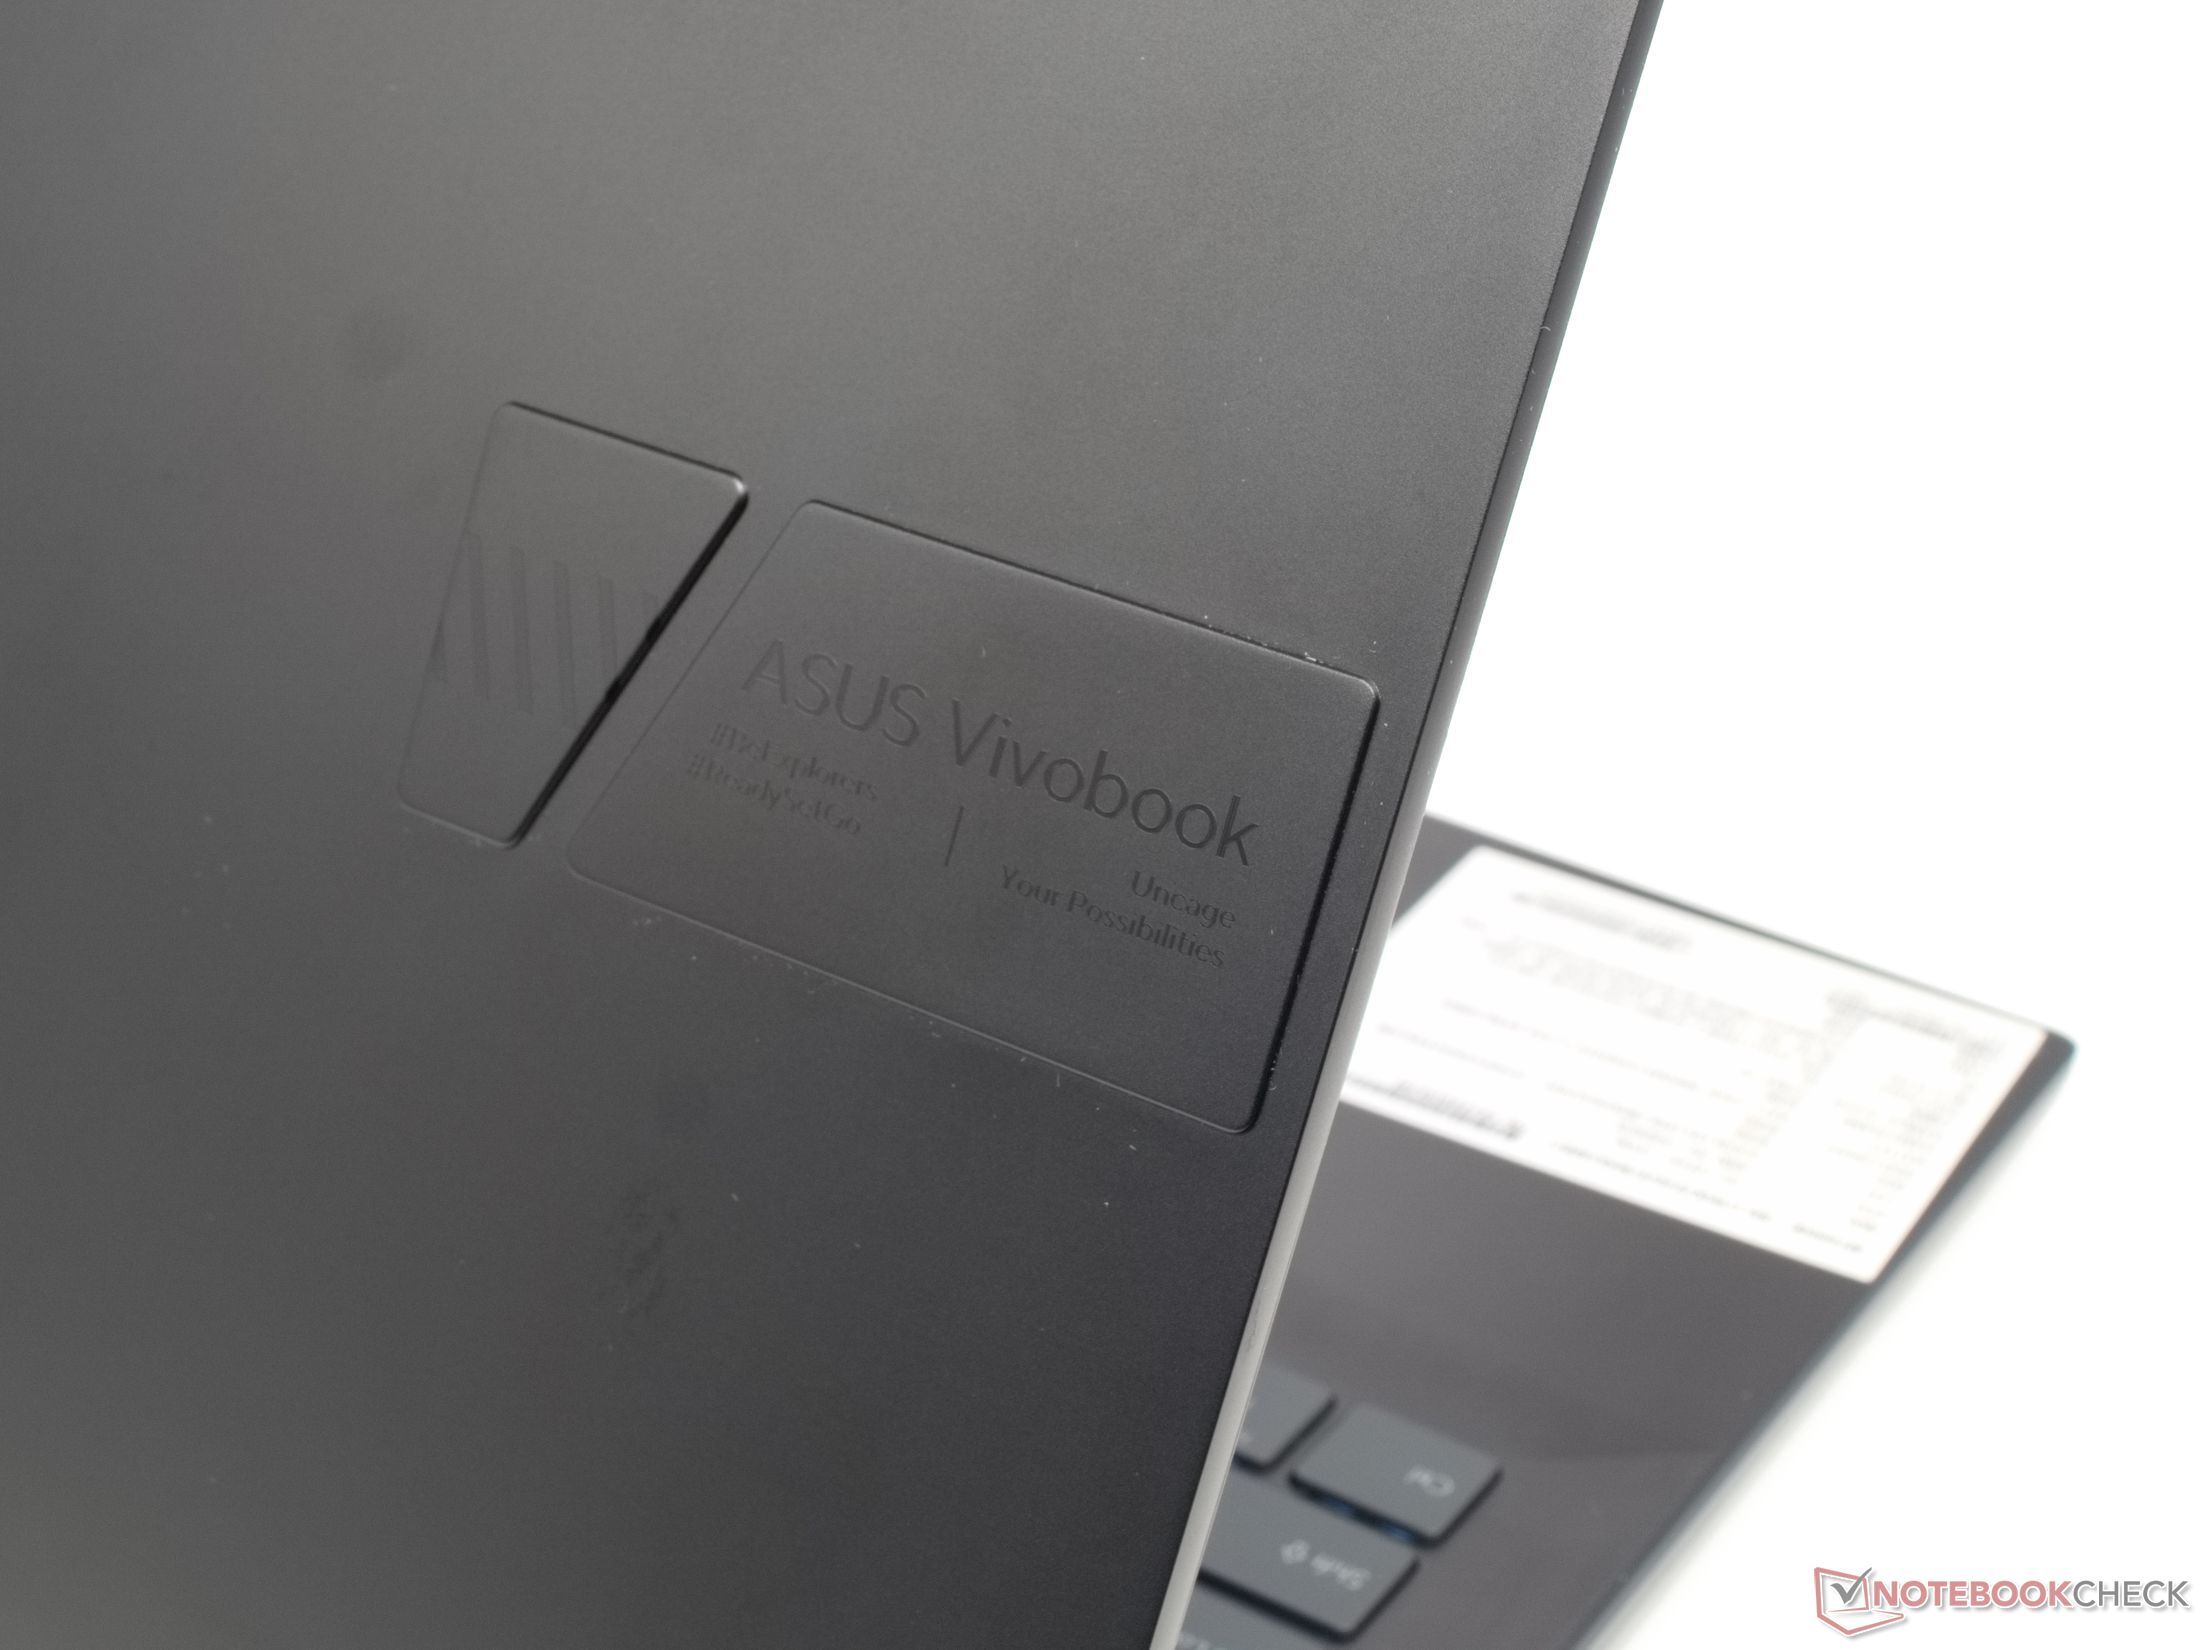 Asus Vivobook Ausdauer Display im starkes - und Pro Leistung, Vorabtest: Tests OLED- Notebookcheck.com 16X